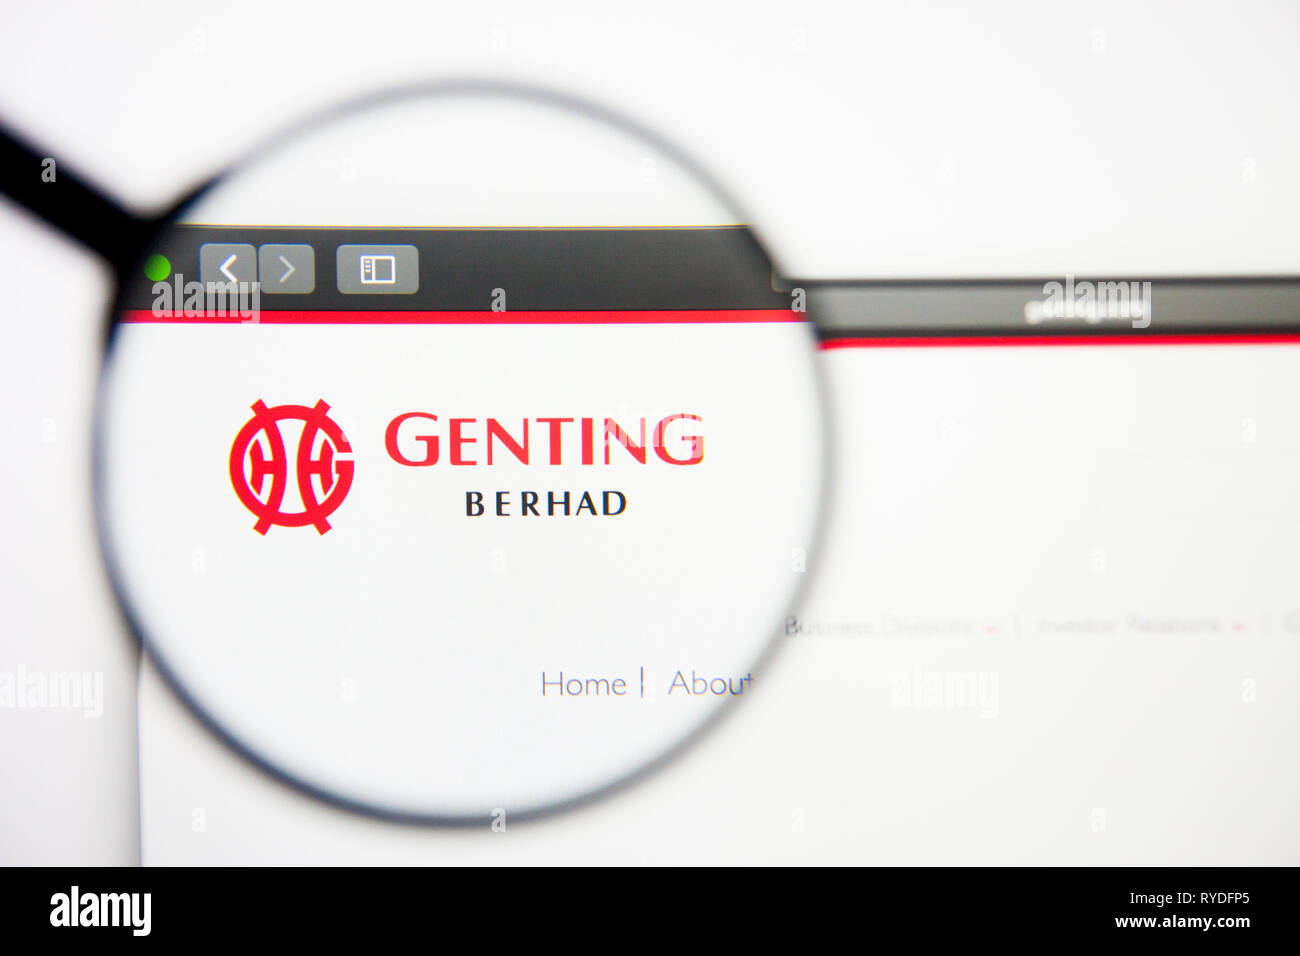 Los Angeles, Kalifornien, USA - 5. März 2019: Genting Homepage. Genting Logo sichtbar auf dem Display, Illustrative Editorial Stockfoto